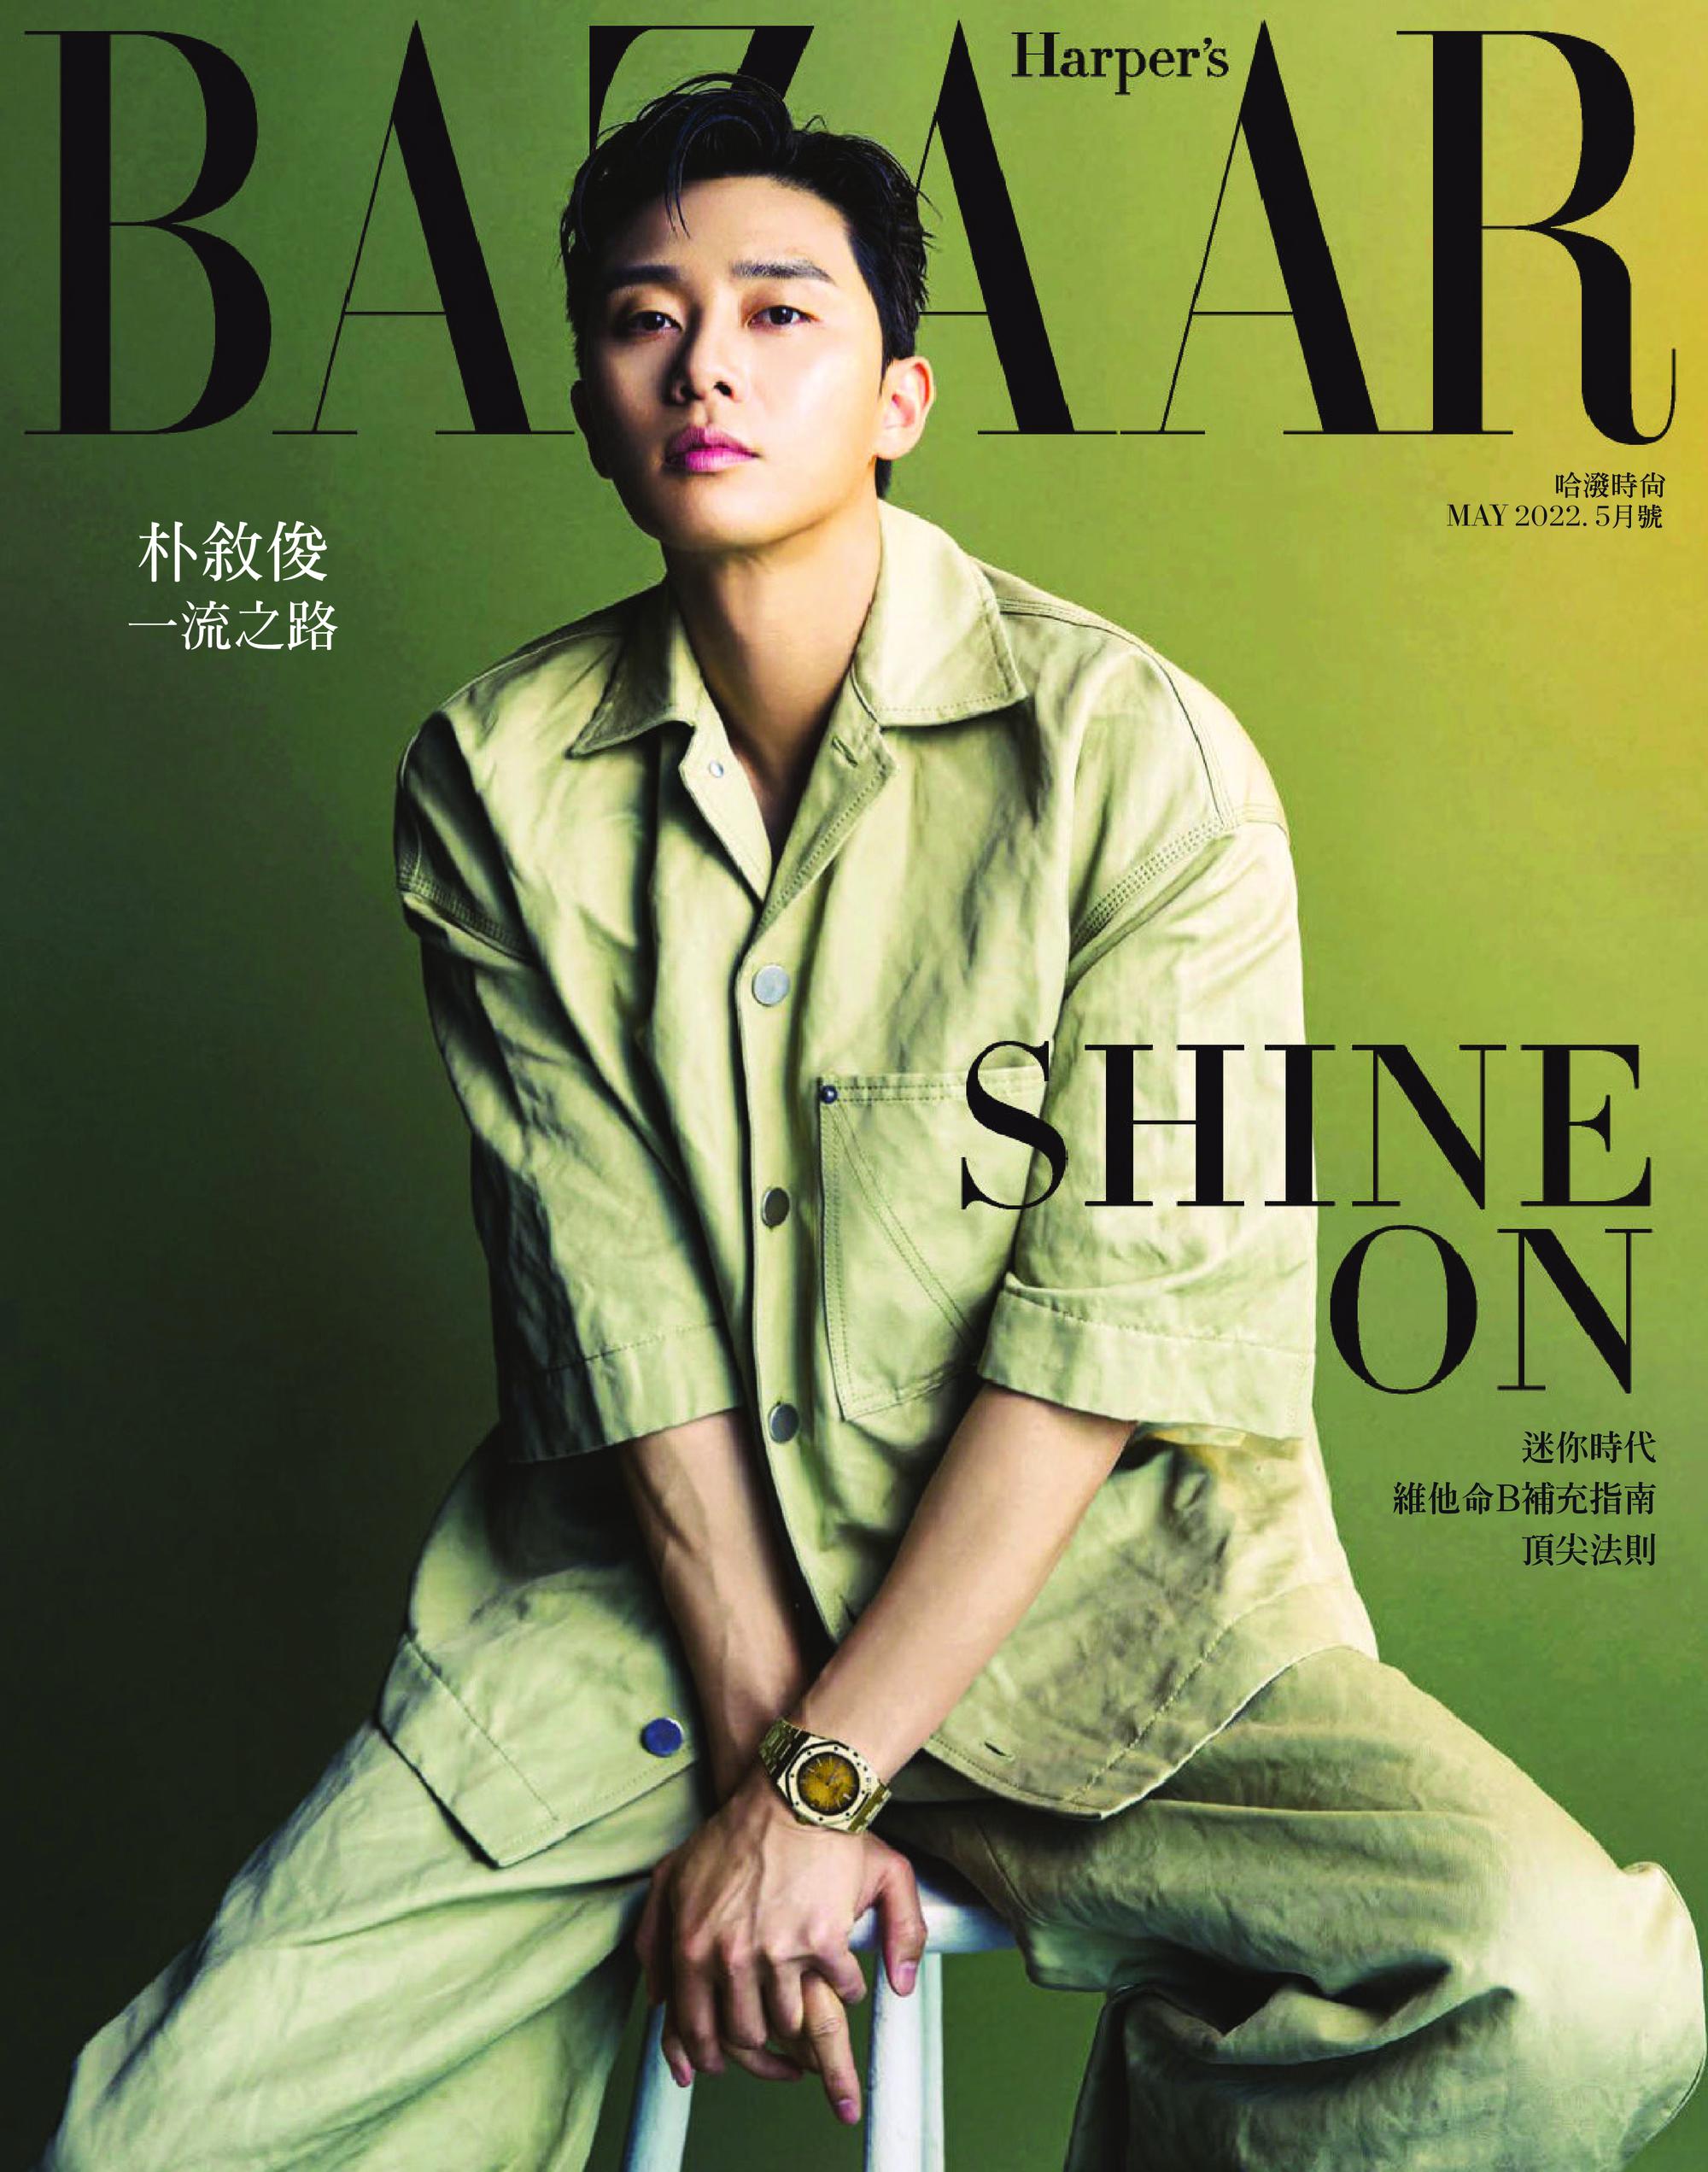 Harper's Bazaar Taiwan - 五月 2022